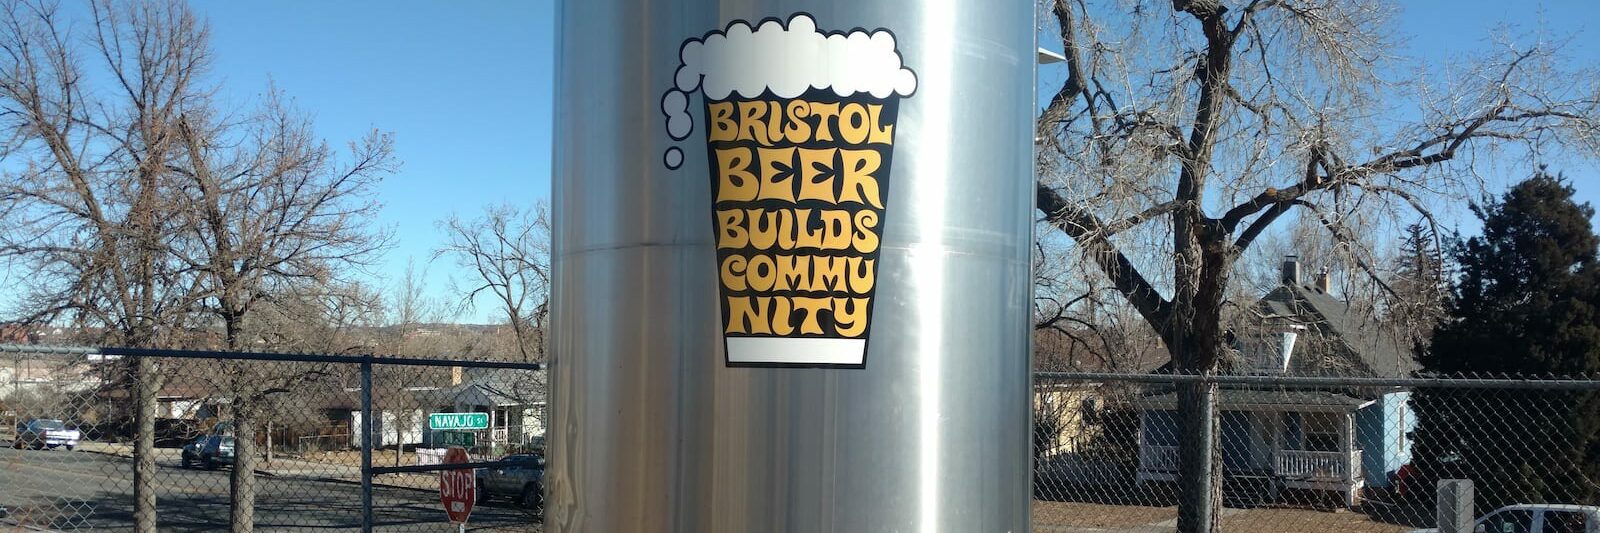 Colorado Springs Craft Beer Breweries Bristol Beer